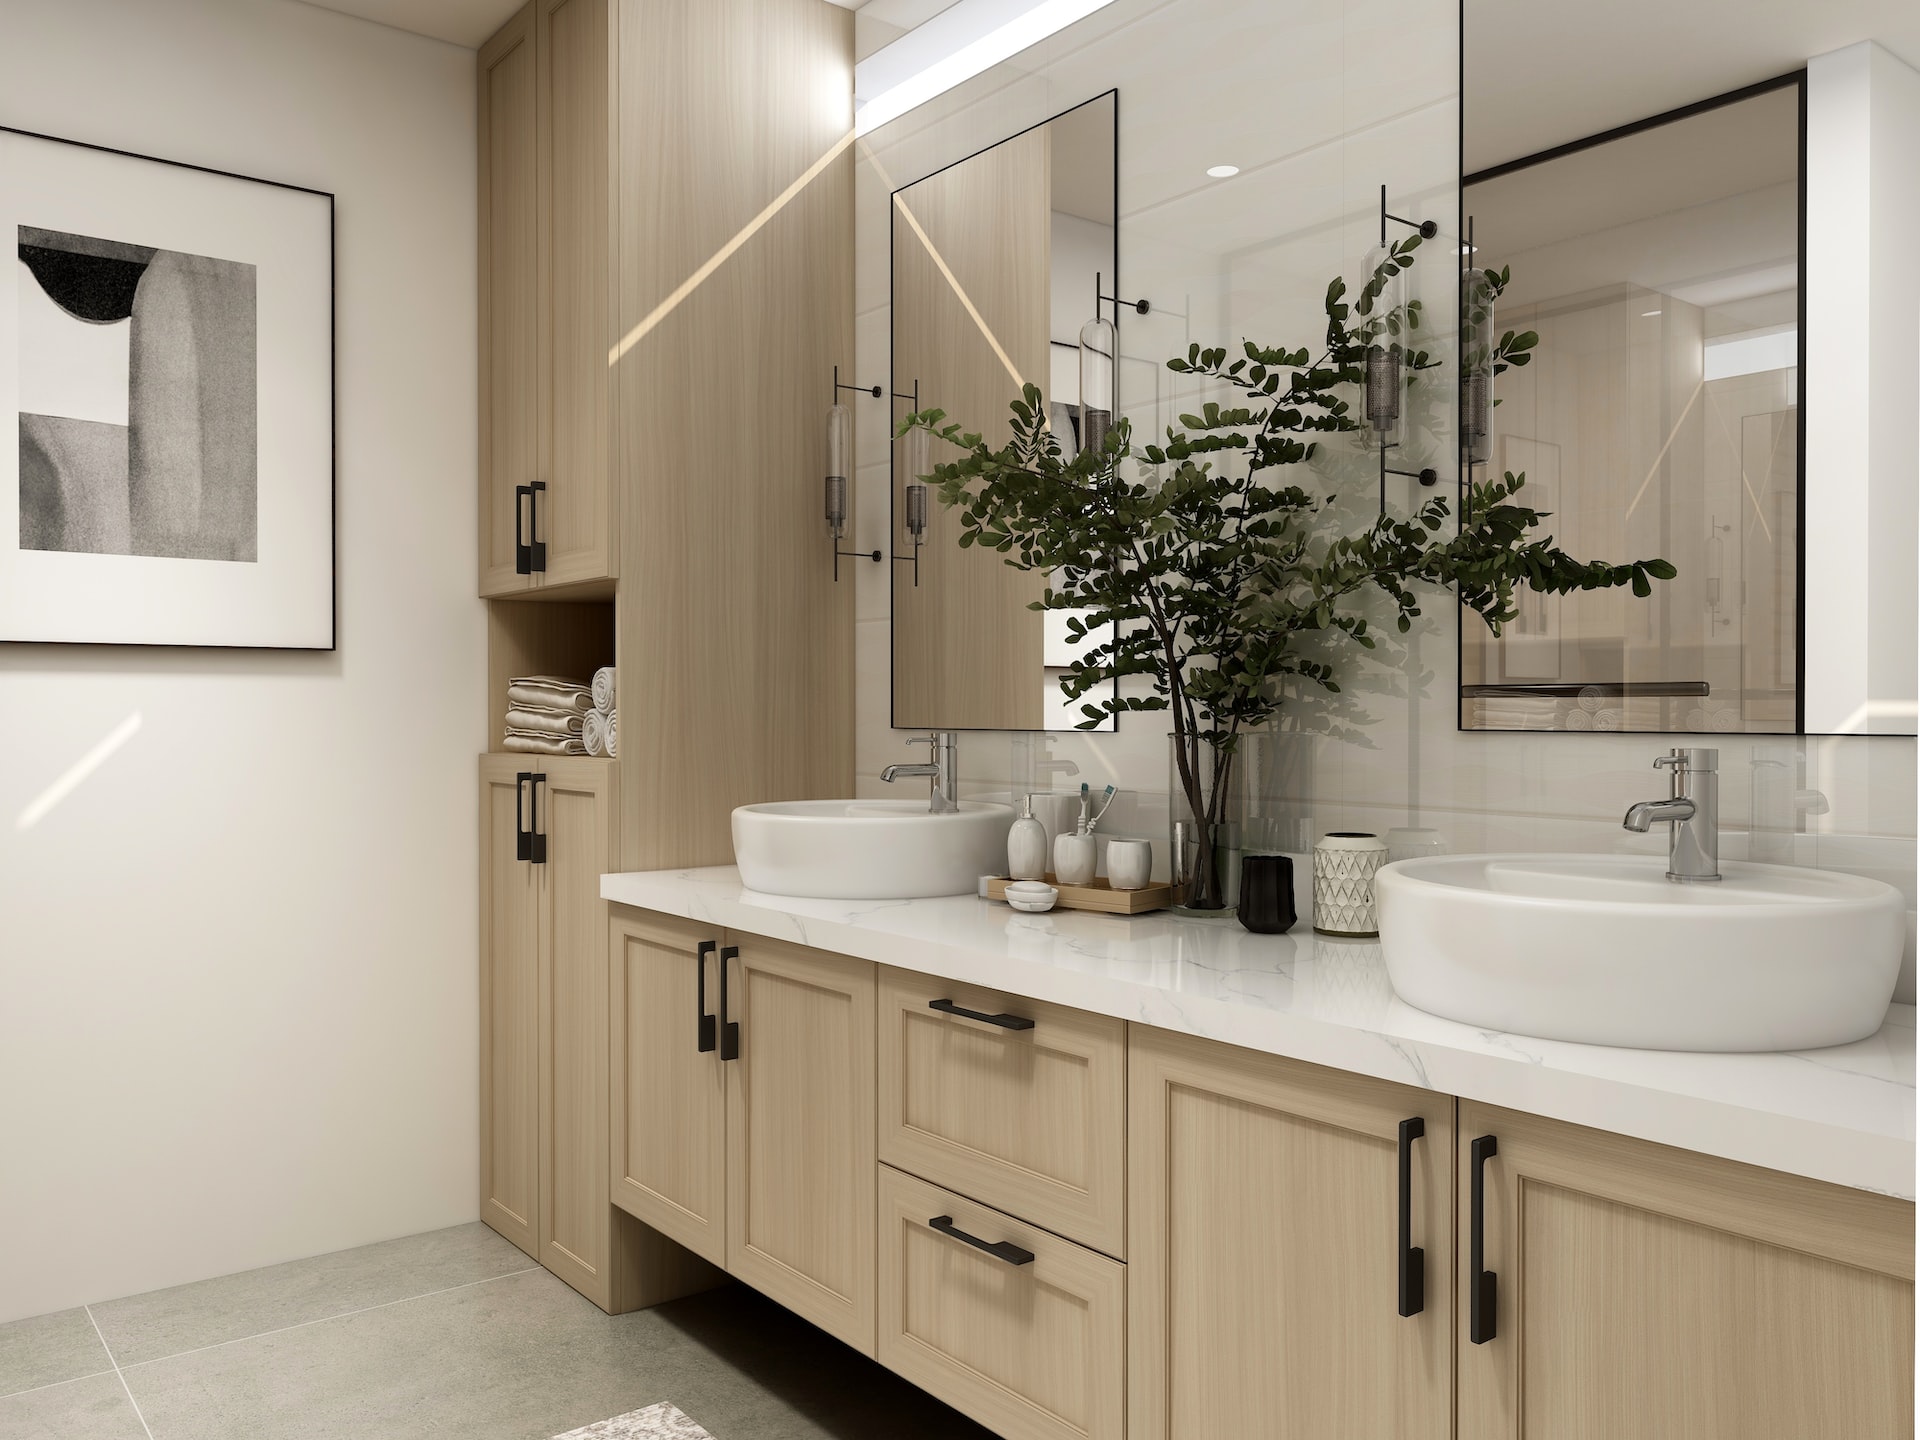 Jak z małej łazienki zrobić nowoczesne wnętrze?